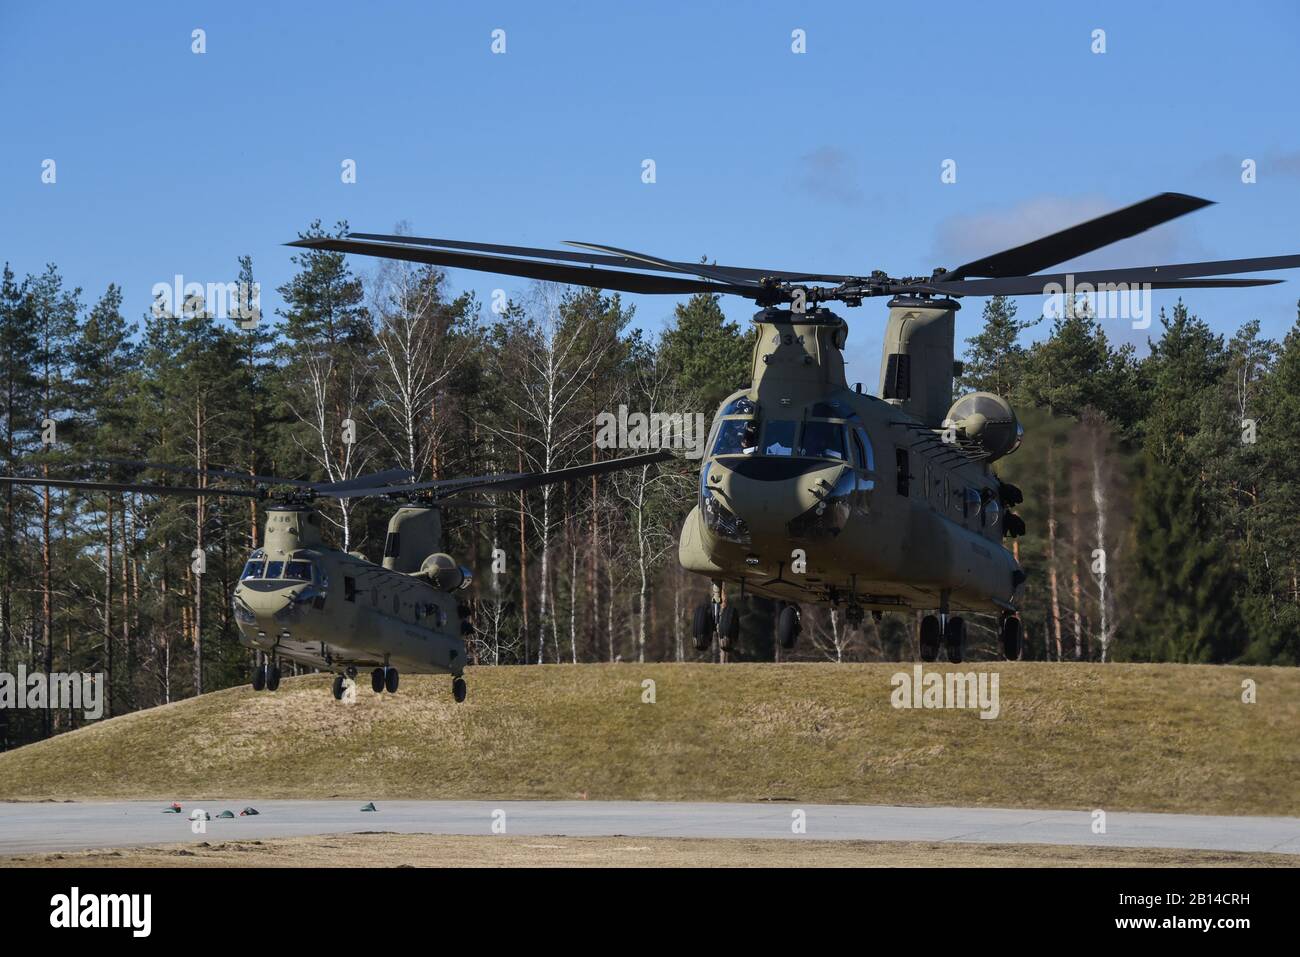 Ejército de EE.UU. Dos helicópteros Chinook CH-47 operado por soldados del 1º Batallón, 3º Regimiento de Aviación levante ya que proporcionan apoyo aéreo para los paracaidistas del 2º Batallón del 503º Regimiento de Infantería, la 173ª Brigada Aerotransportada durante un pelotón nivel ejercicio con fuego vivo en la séptima la formación del ejército del Comando Área de Formación Grafenwoehr, Alemania, 21 de marzo de 2018. (Ee.Uu. Foto del ejército por Markus Rauchenberger) Foto de stock